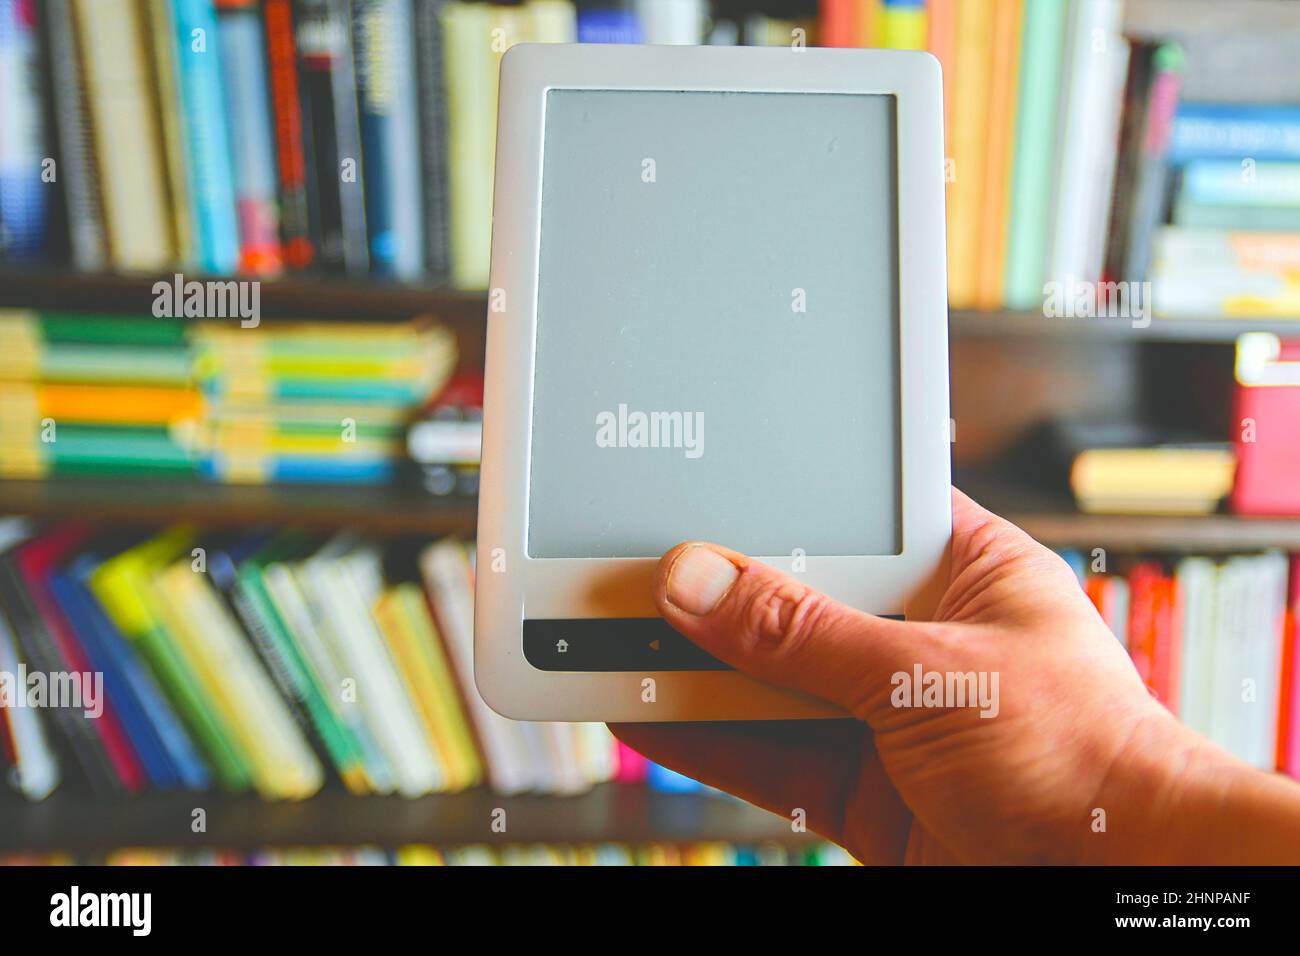 Ebook oder digitale Lesen tablet device. E-Buch in der Hand des Menschen. Im Hintergrund ist das Regal mit hellen echte Bücher. Online shopping Bücher Konzept Stockfoto